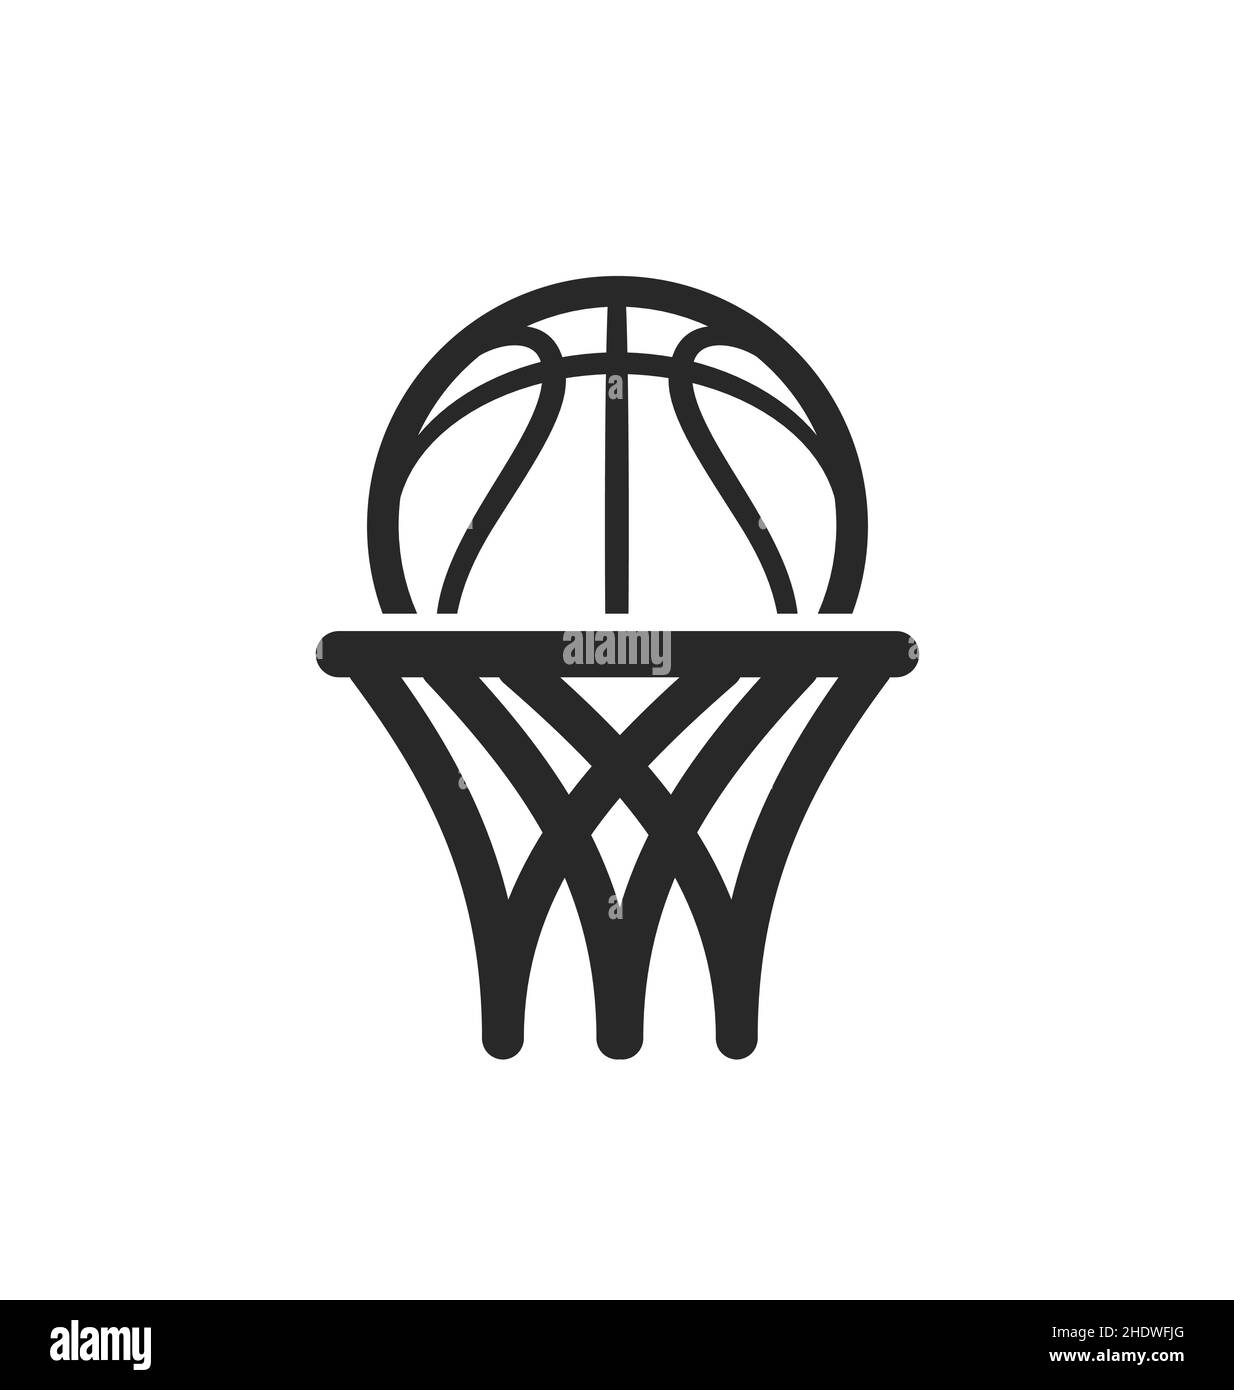 Logo de basket Banque d'images noir et blanc - Alamy